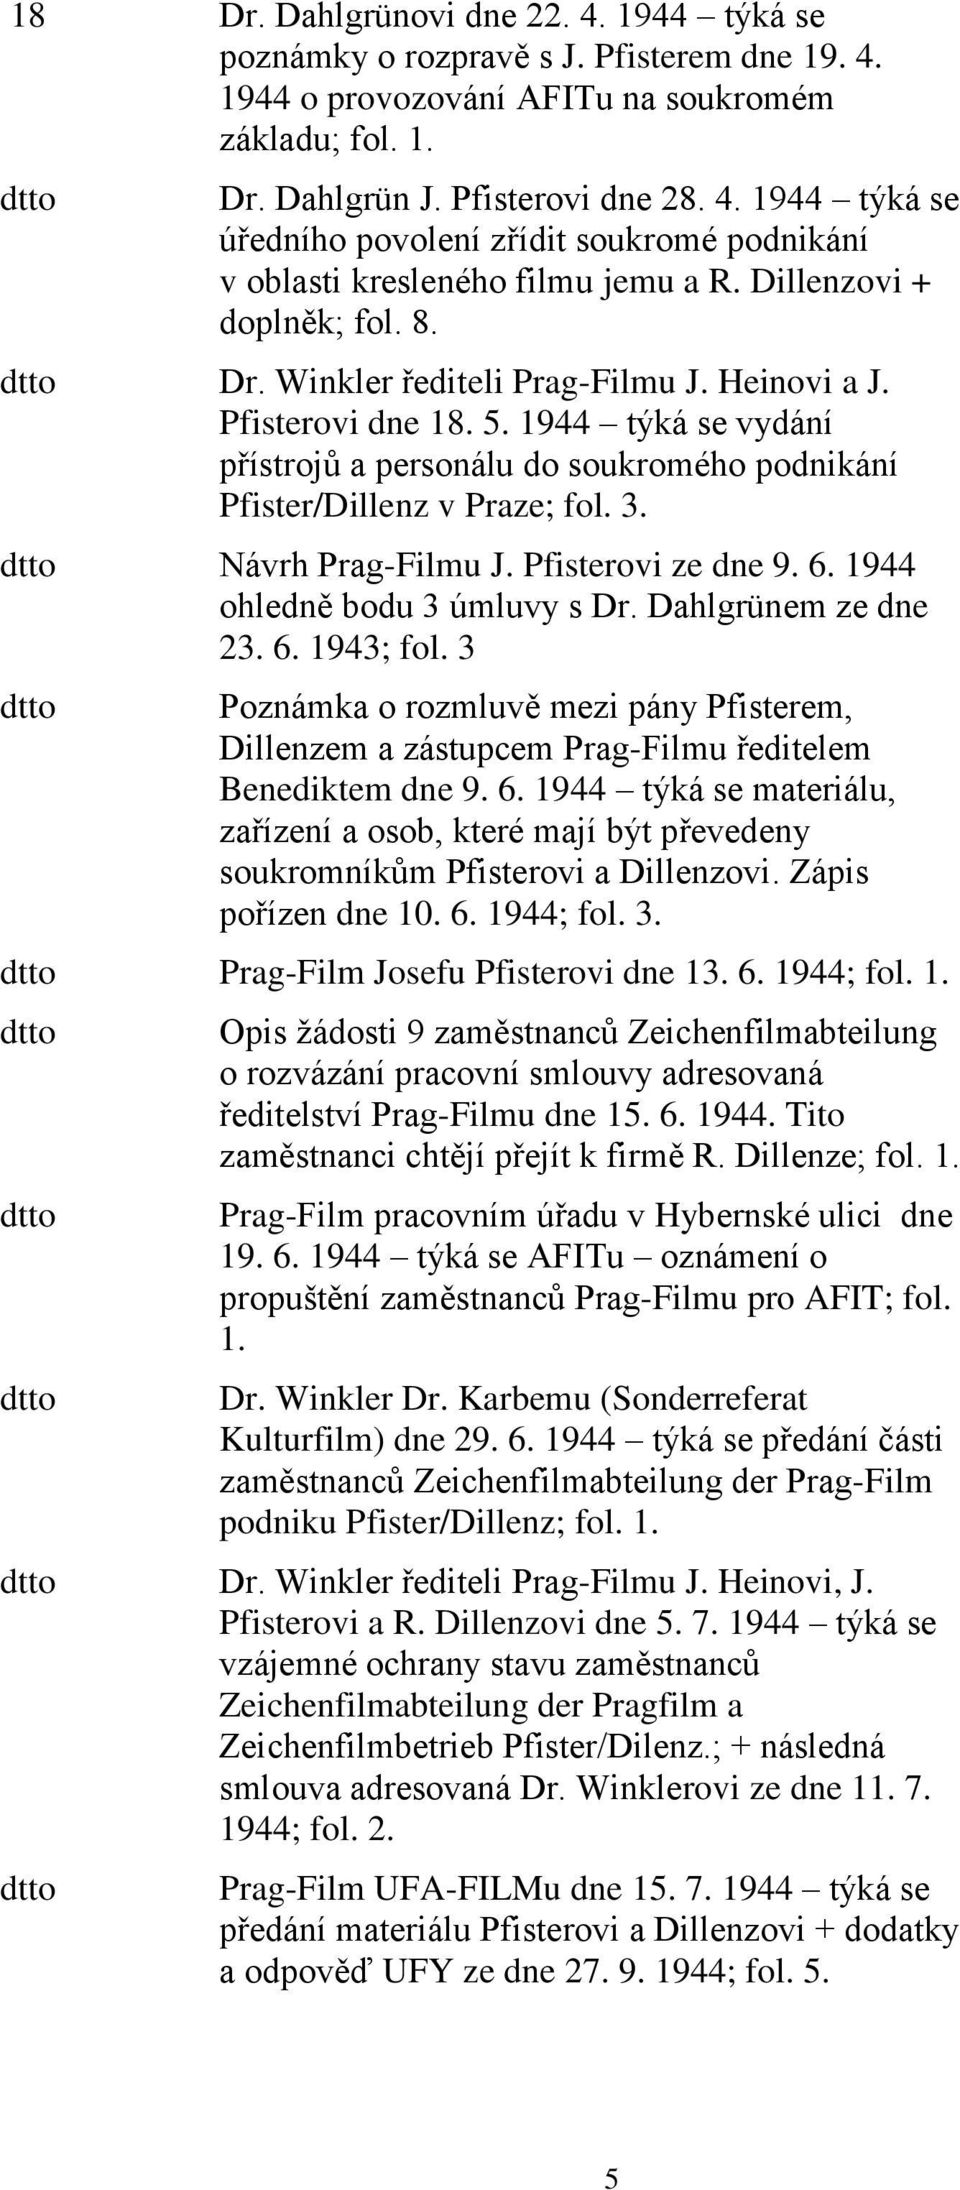 Návrh Prag-Filmu J. Pfisterovi ze dne 9. 6. 1944 ohledně bodu 3 úmluvy s Dr. Dahlgrünem ze dne 23. 6. 1943; fol.